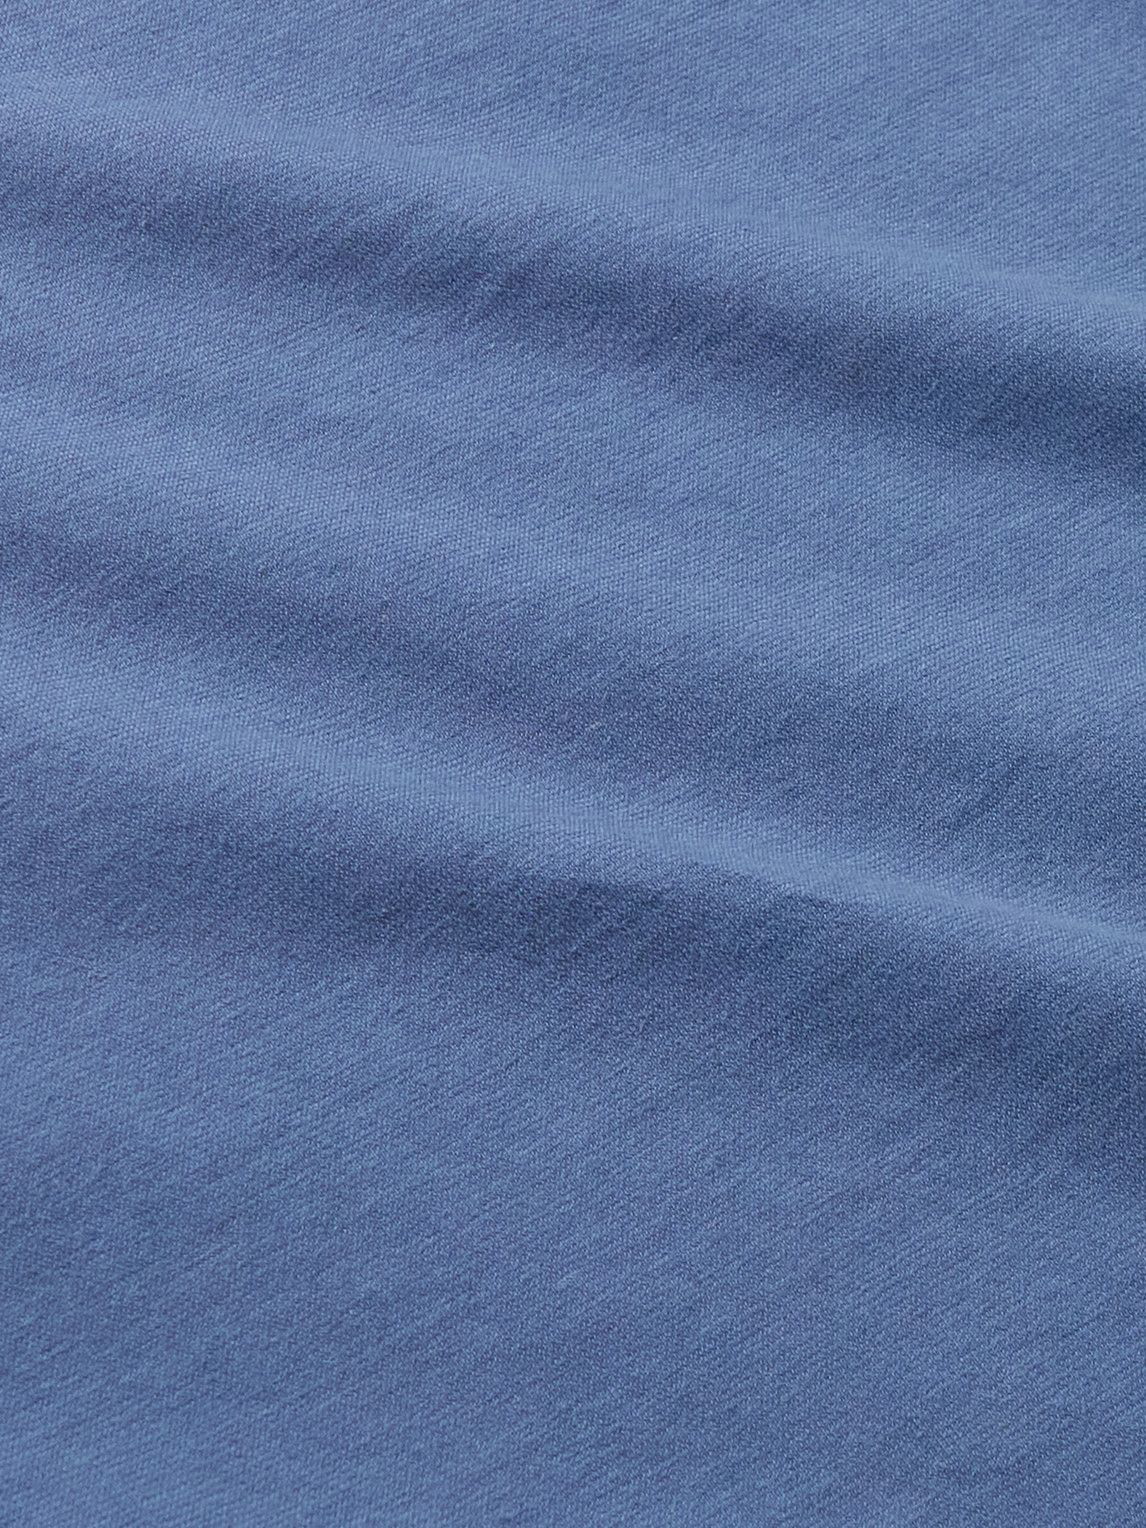 DOPPIAA - Aaktion Cotton-Jersey T-Shirt - Blue DOPPIAA